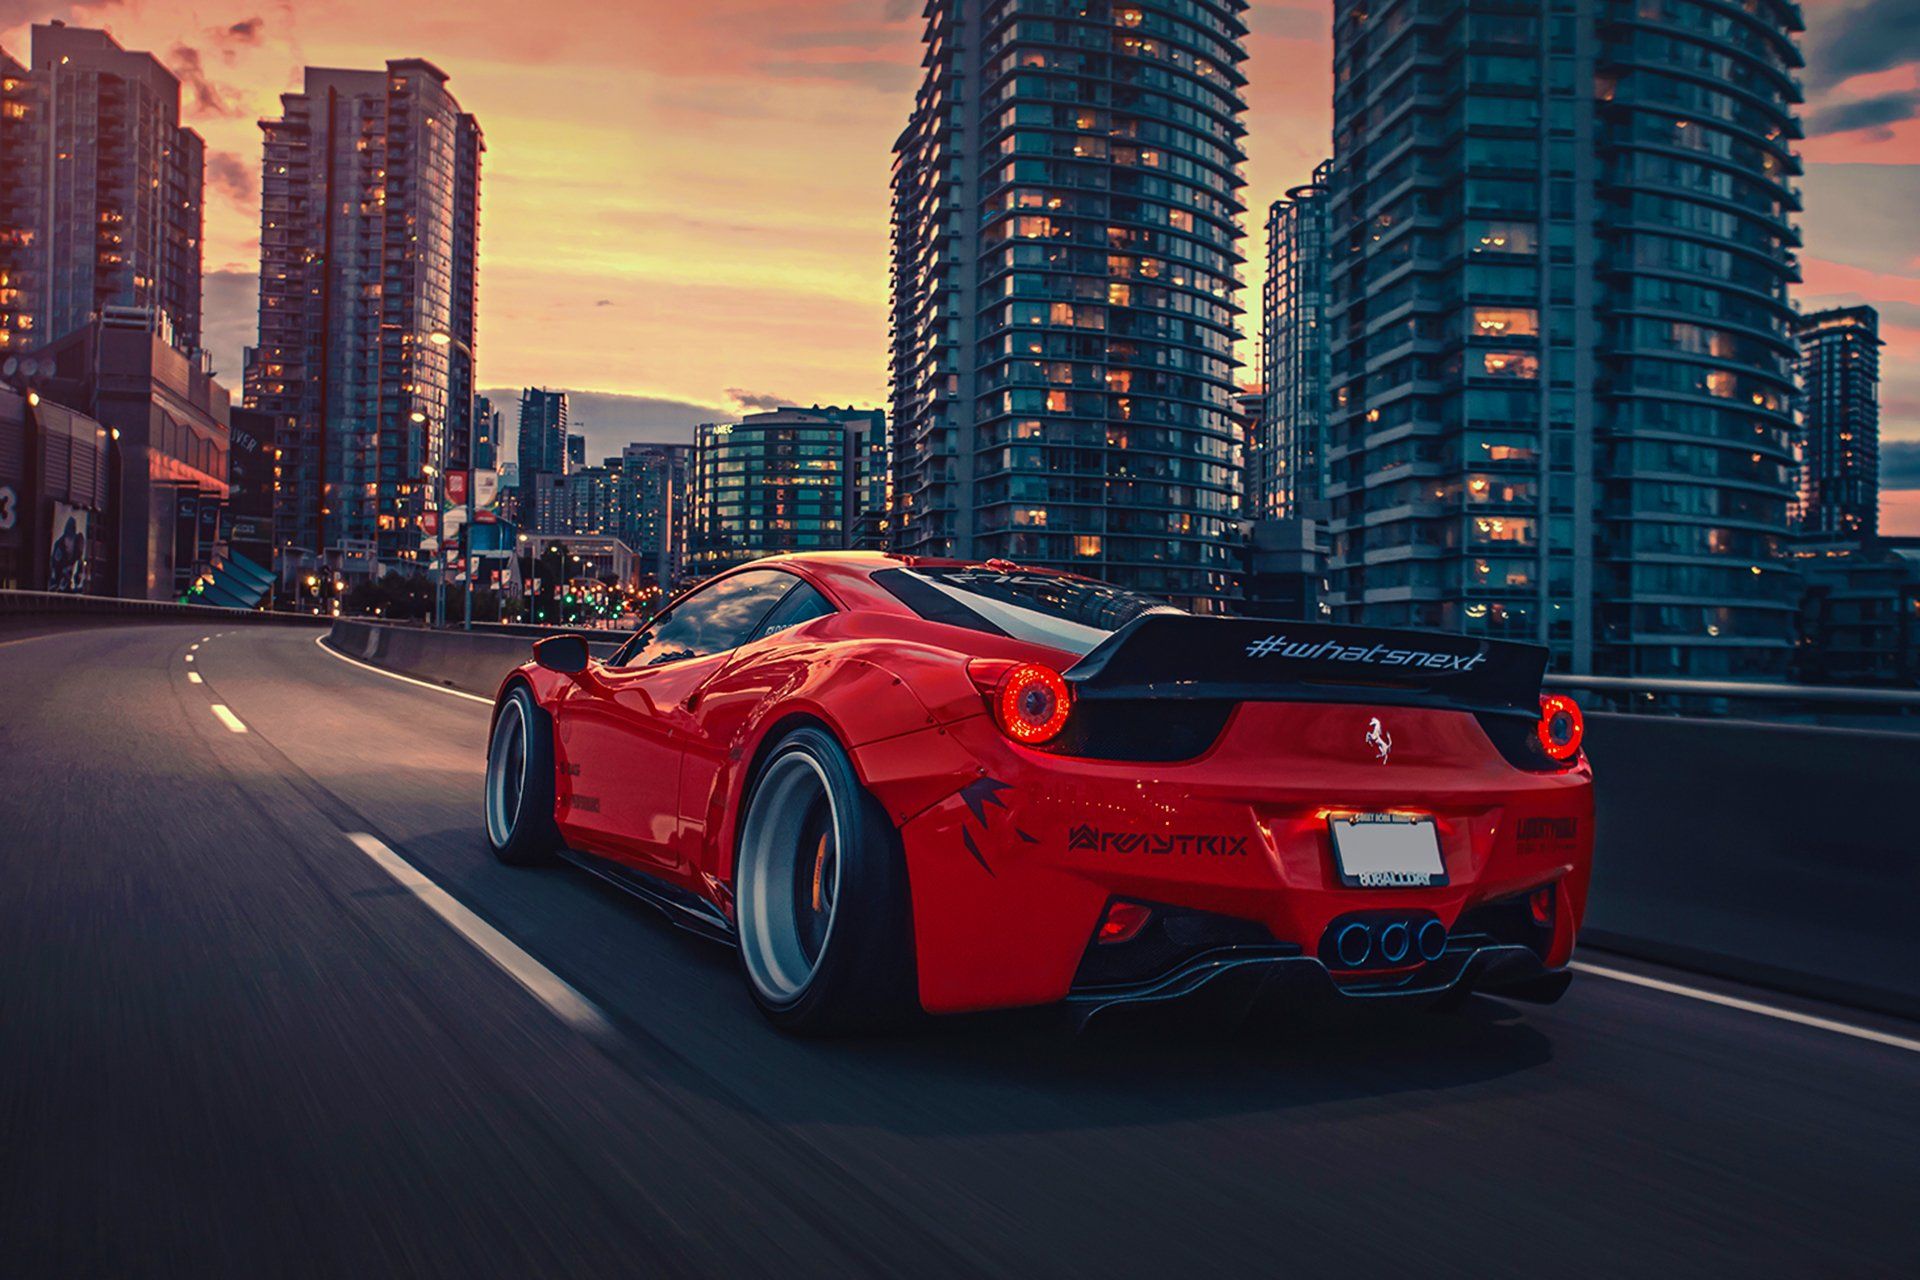 عکس جالب و دیدنی از ماشین قرمز در جاده با ساختمان های بلند کنار جاده 